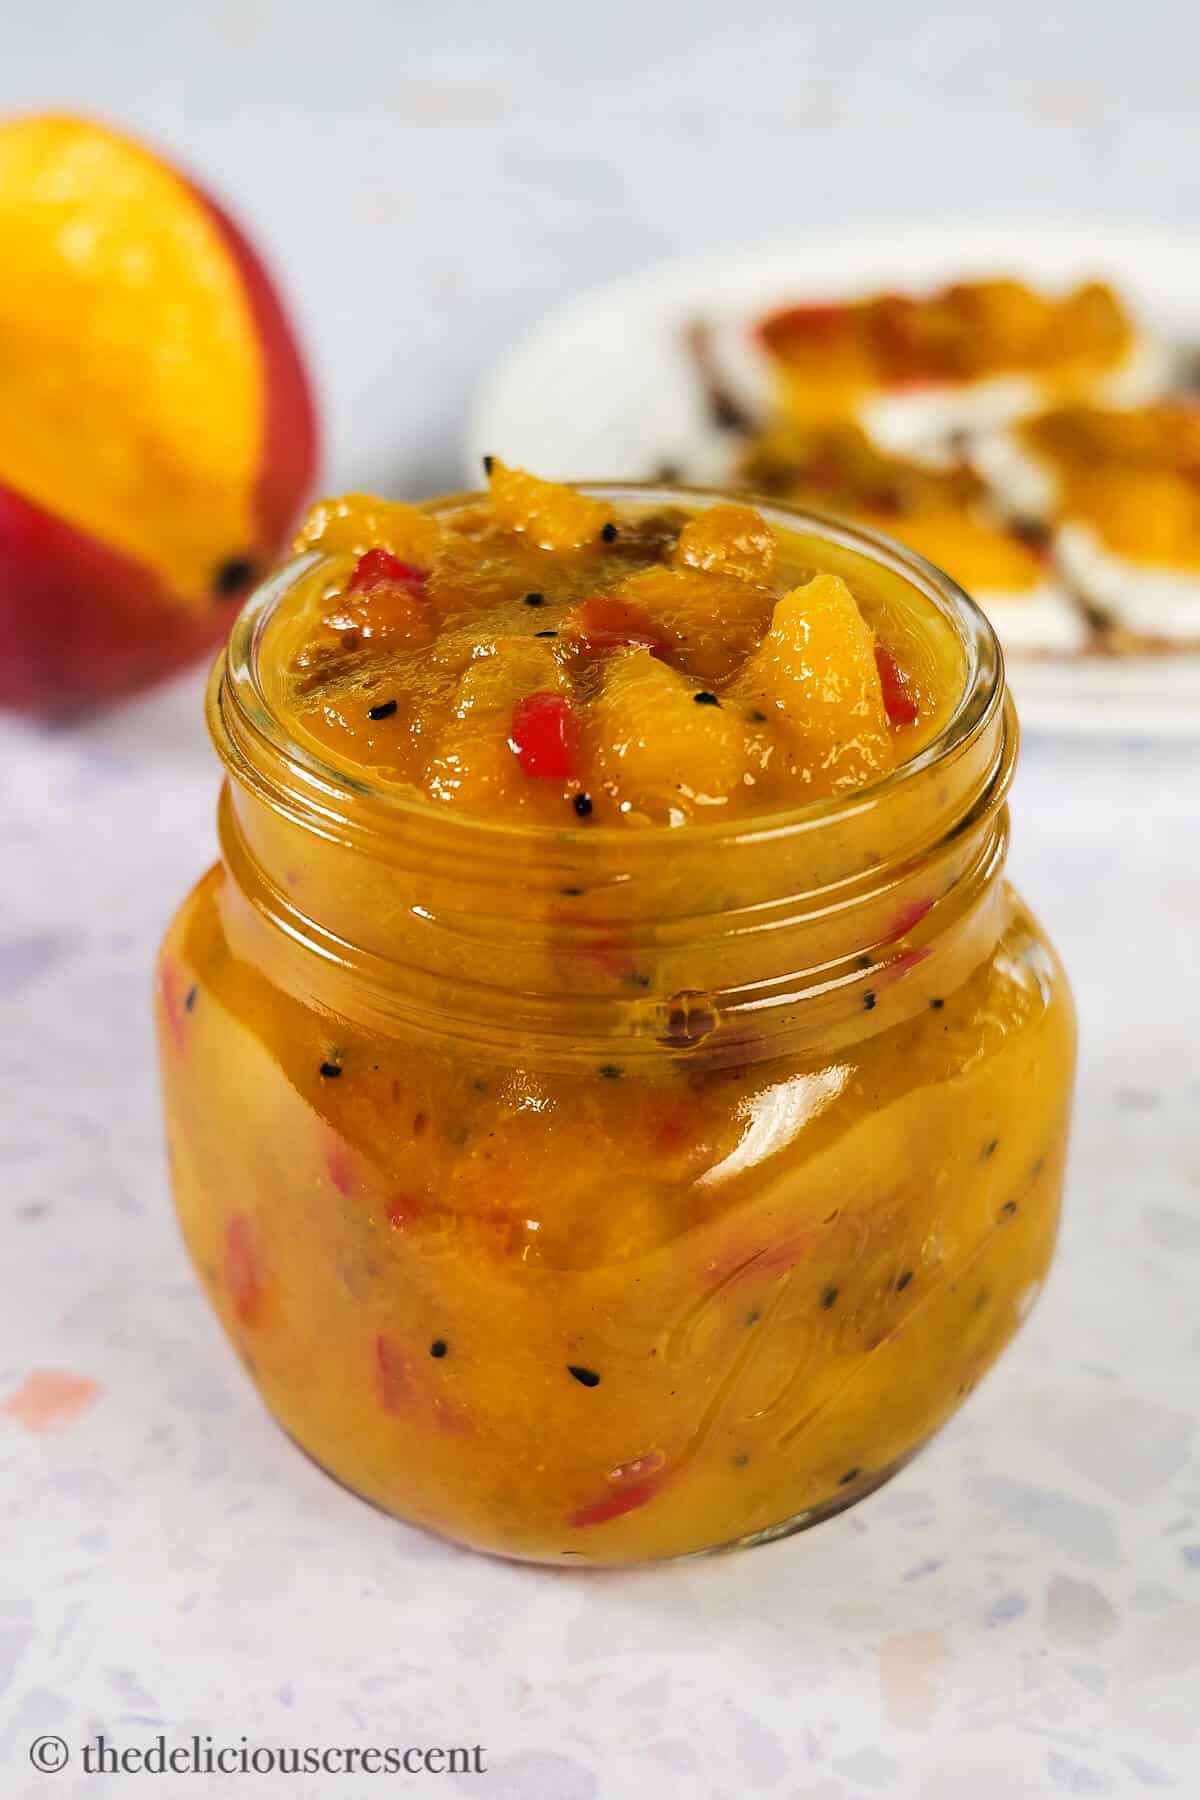 Mango chutney filled in a jar.